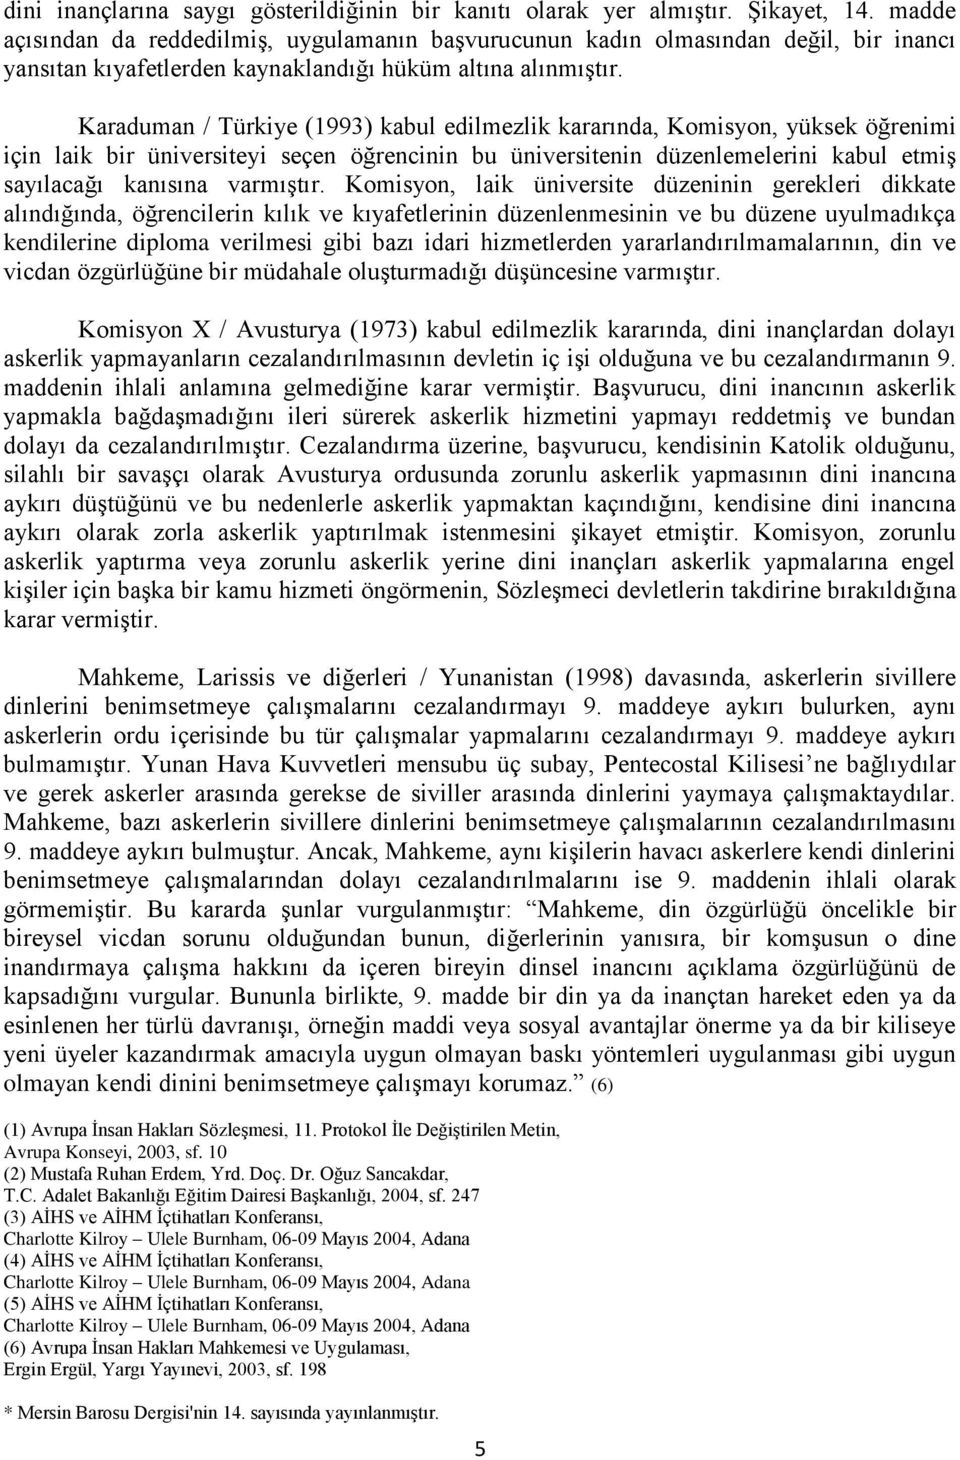 Karaduman / Türkiye (1993) kabul edilmezlik kararında, Komisyon, yüksek öğrenimi için laik bir üniversiteyi seçen öğrencinin bu üniversitenin düzenlemelerini kabul etmiş sayılacağı kanısına varmıştır.